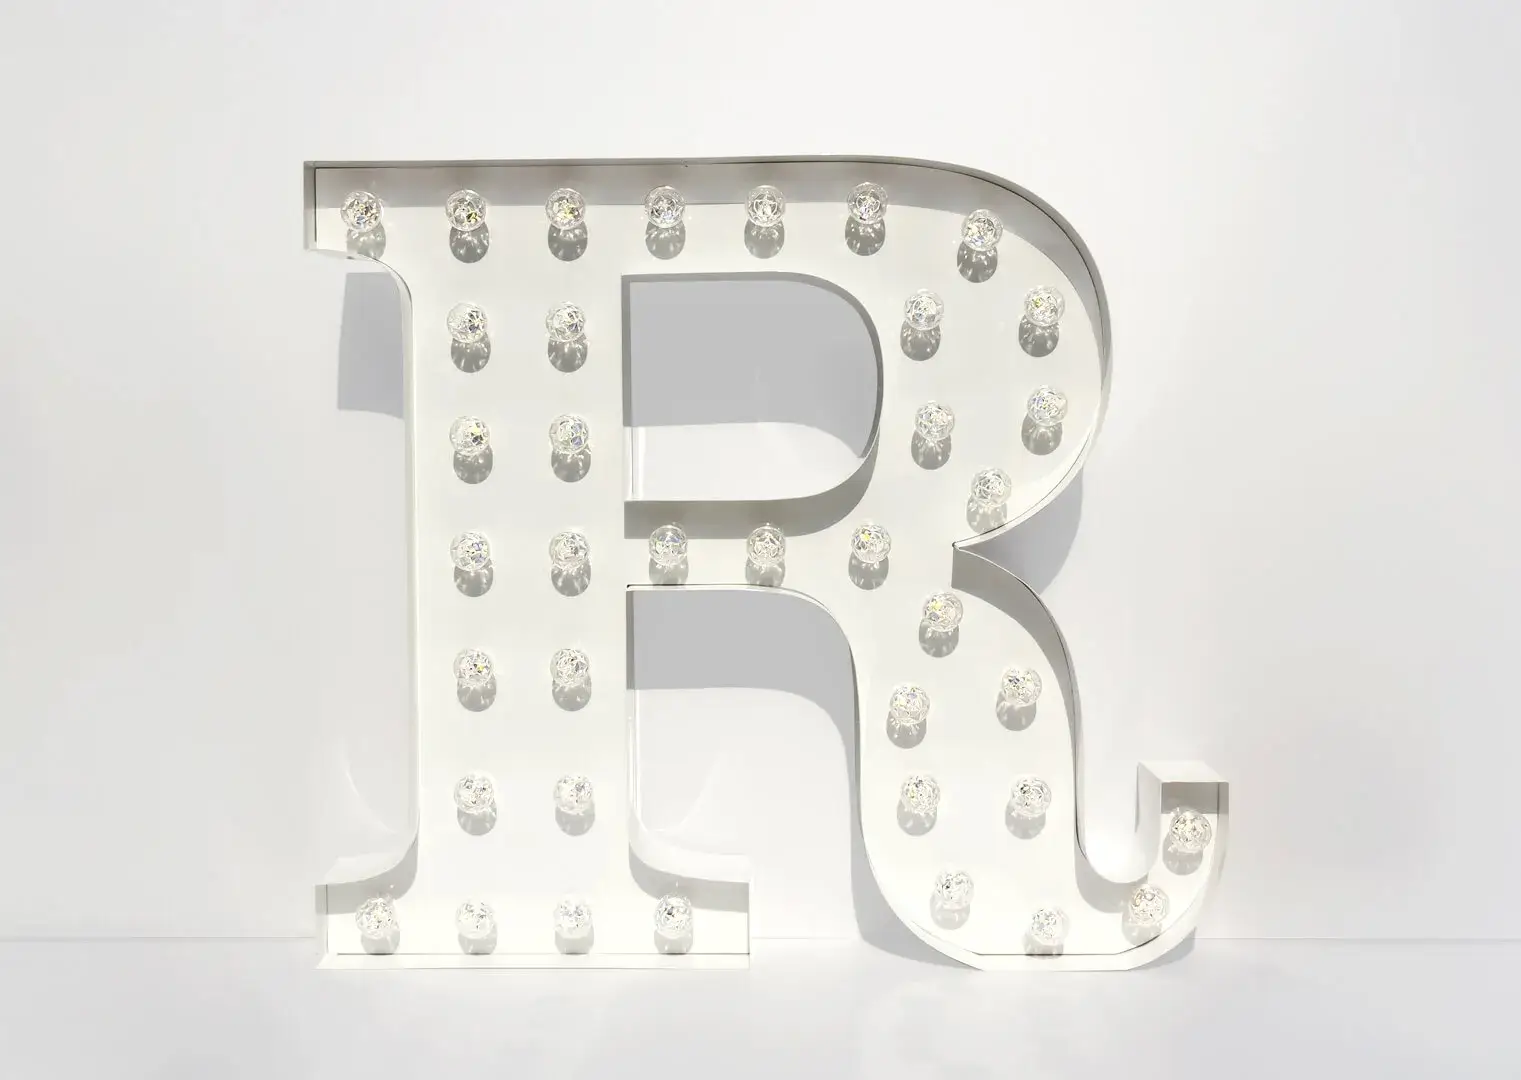 Litera R - świecąca litera z żarówkami w kolorze białym